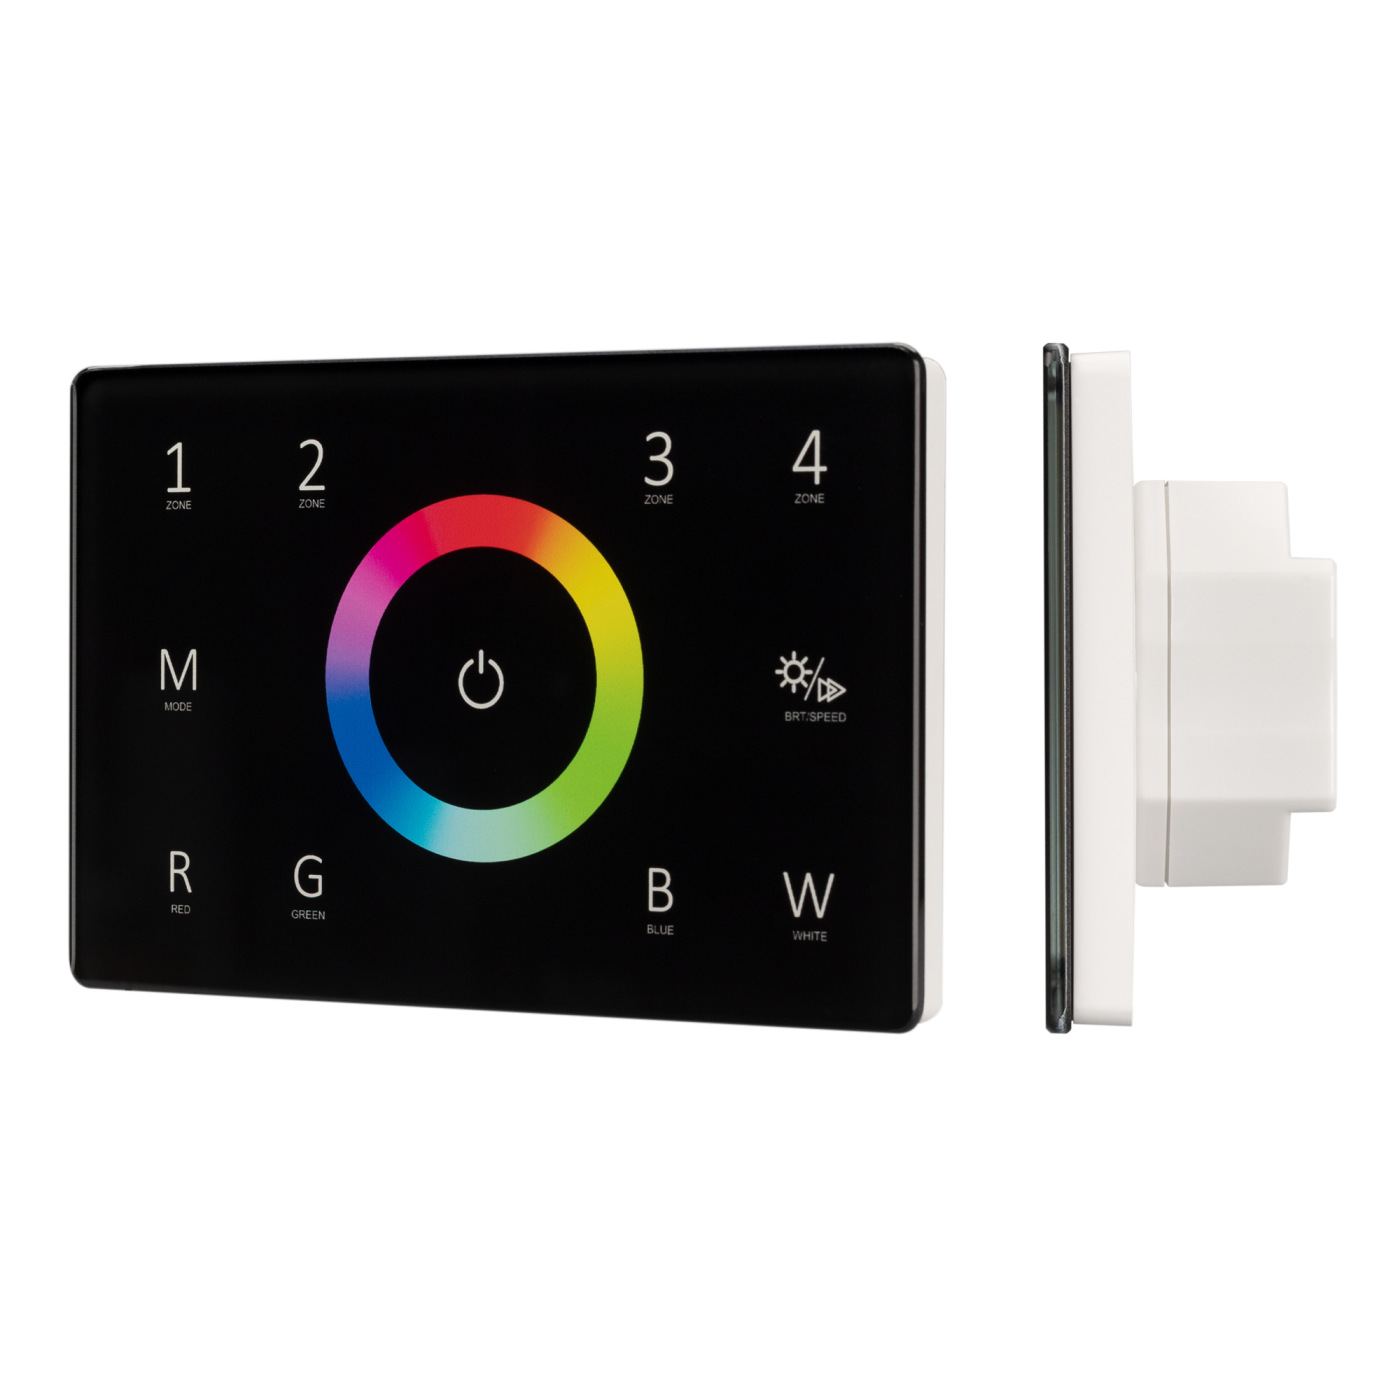 Панель Sens SMART-P85-RGBW Black (230V, 4 зоны, 2.4G) (Arlight, IP20 Пластик, 5 лет) a36 мини беспроводная клавиатура 2 4 ггц air mouse аккумуляторная клавиатура сенсорная панель для android tv box smart tv pc ps3